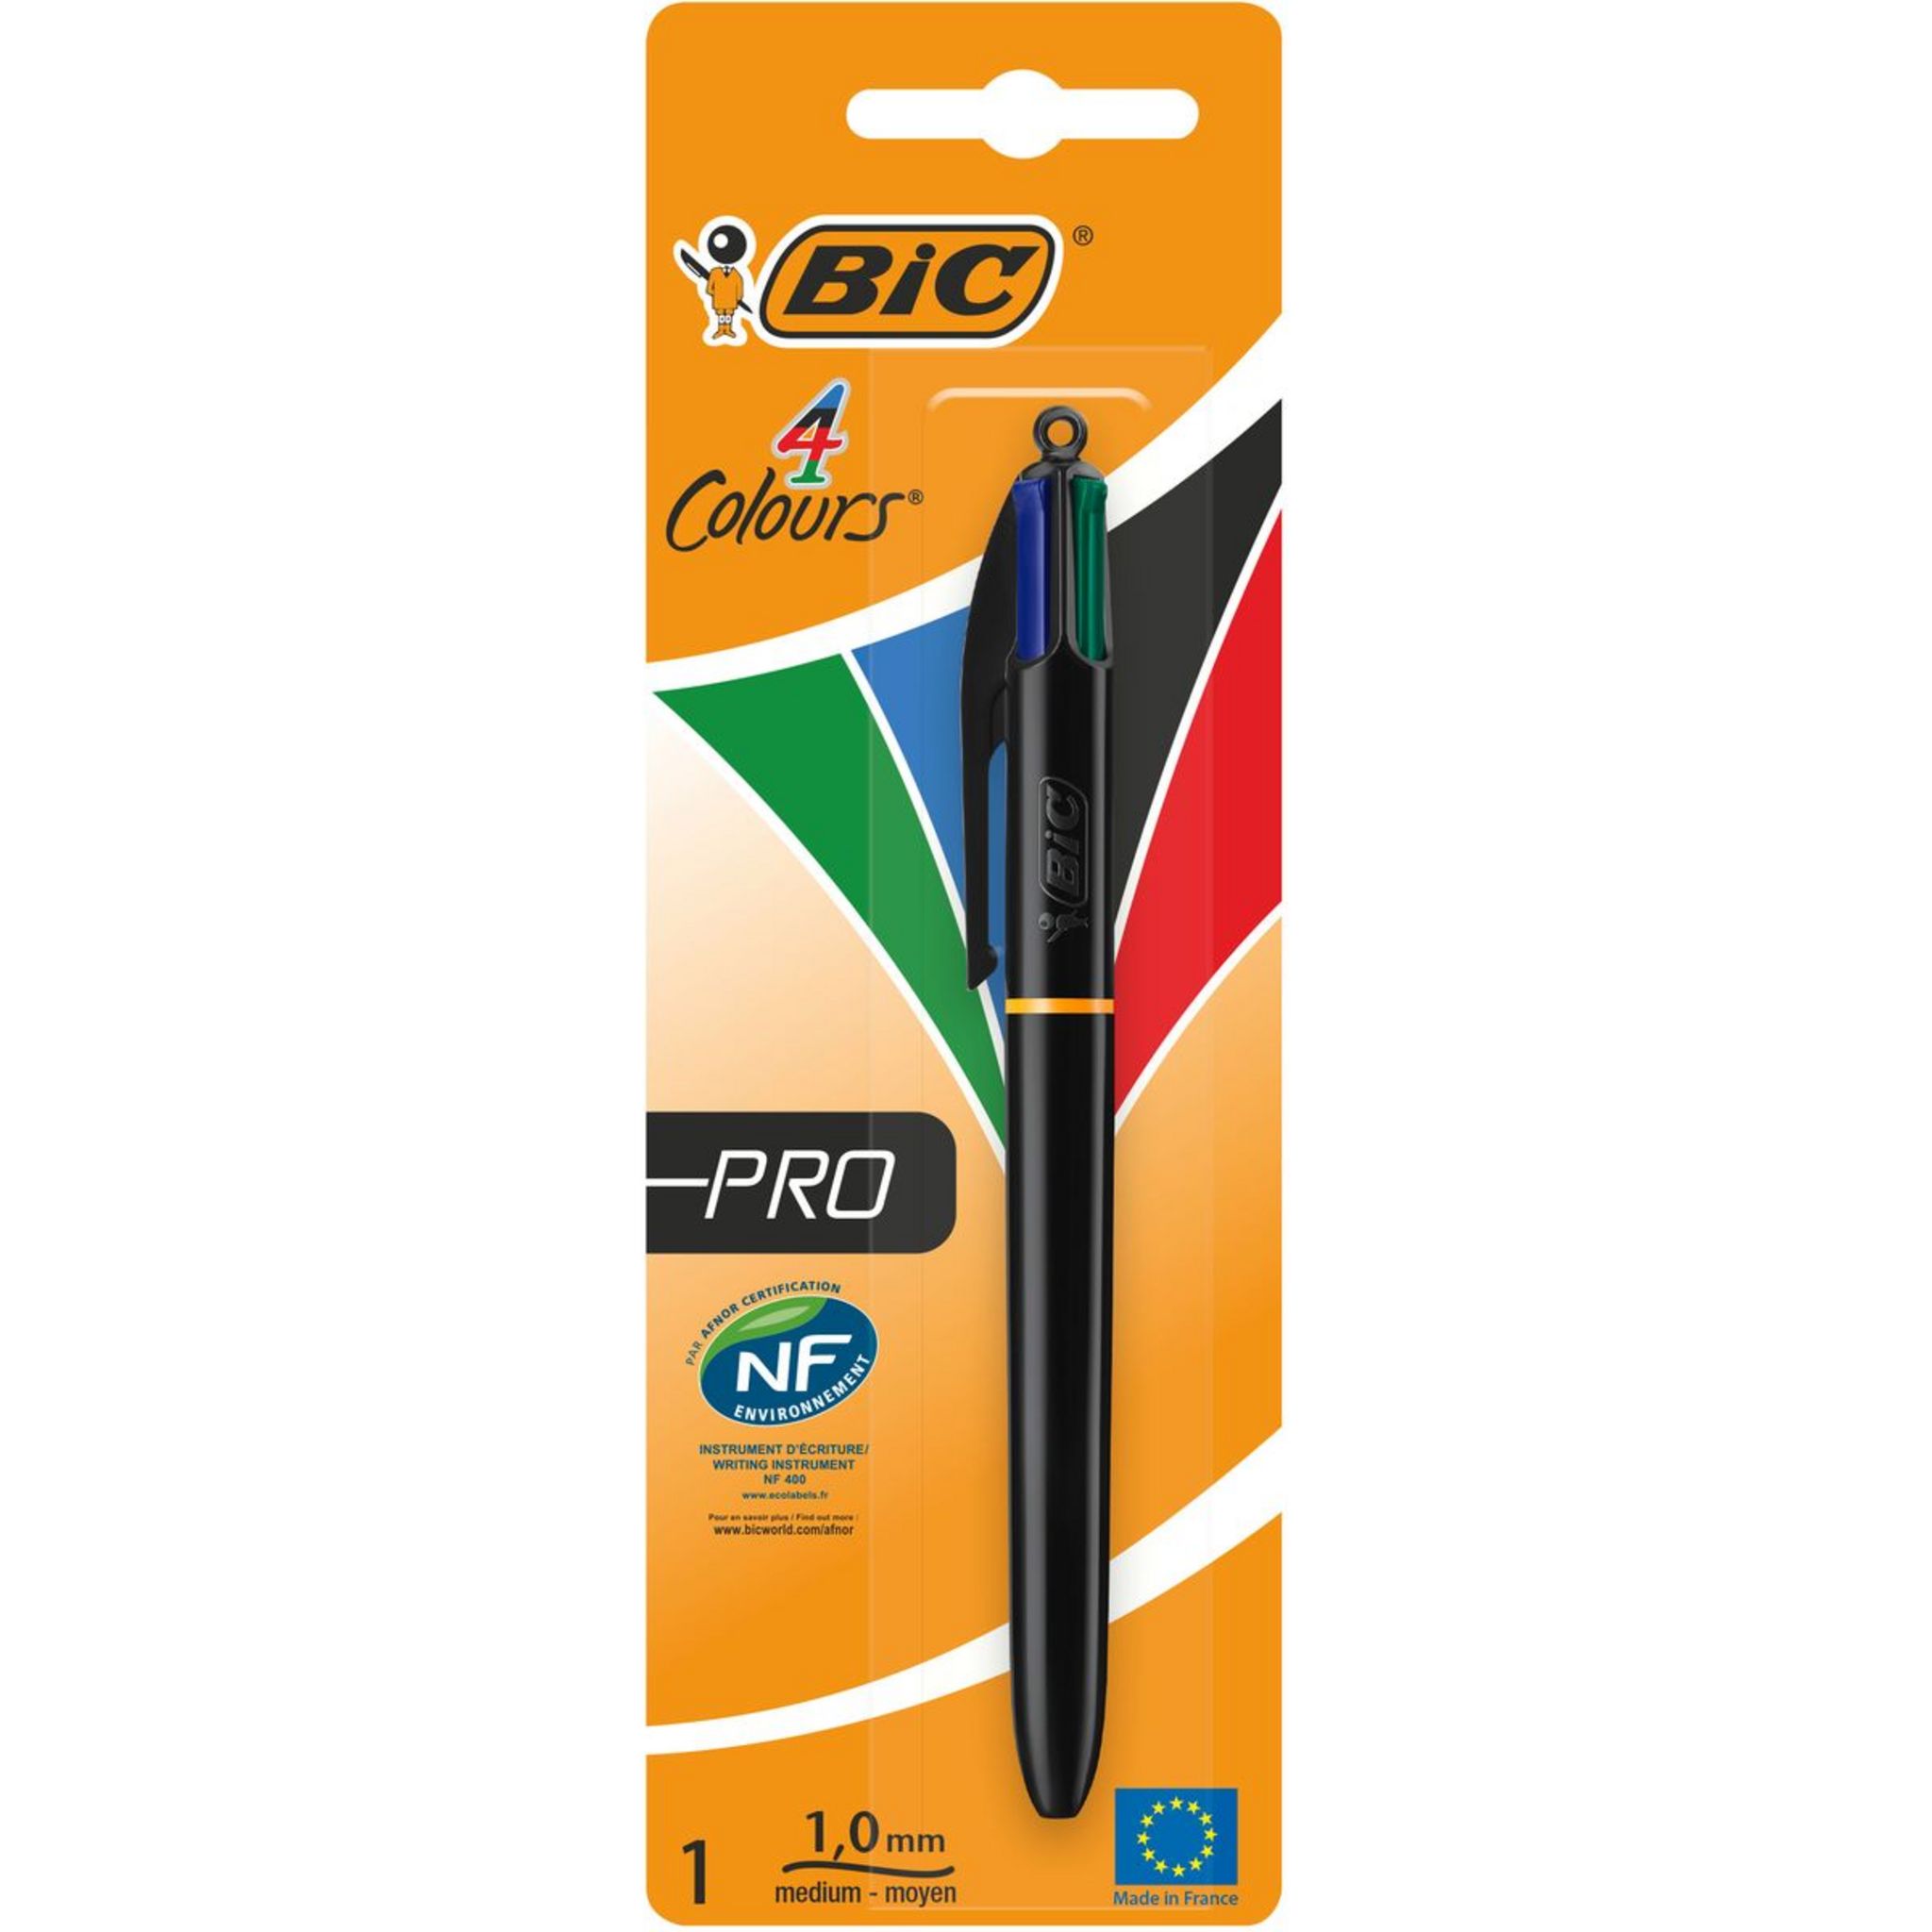 Le stylo quatre couleurs Bic le plus cher au monde vendu plus de